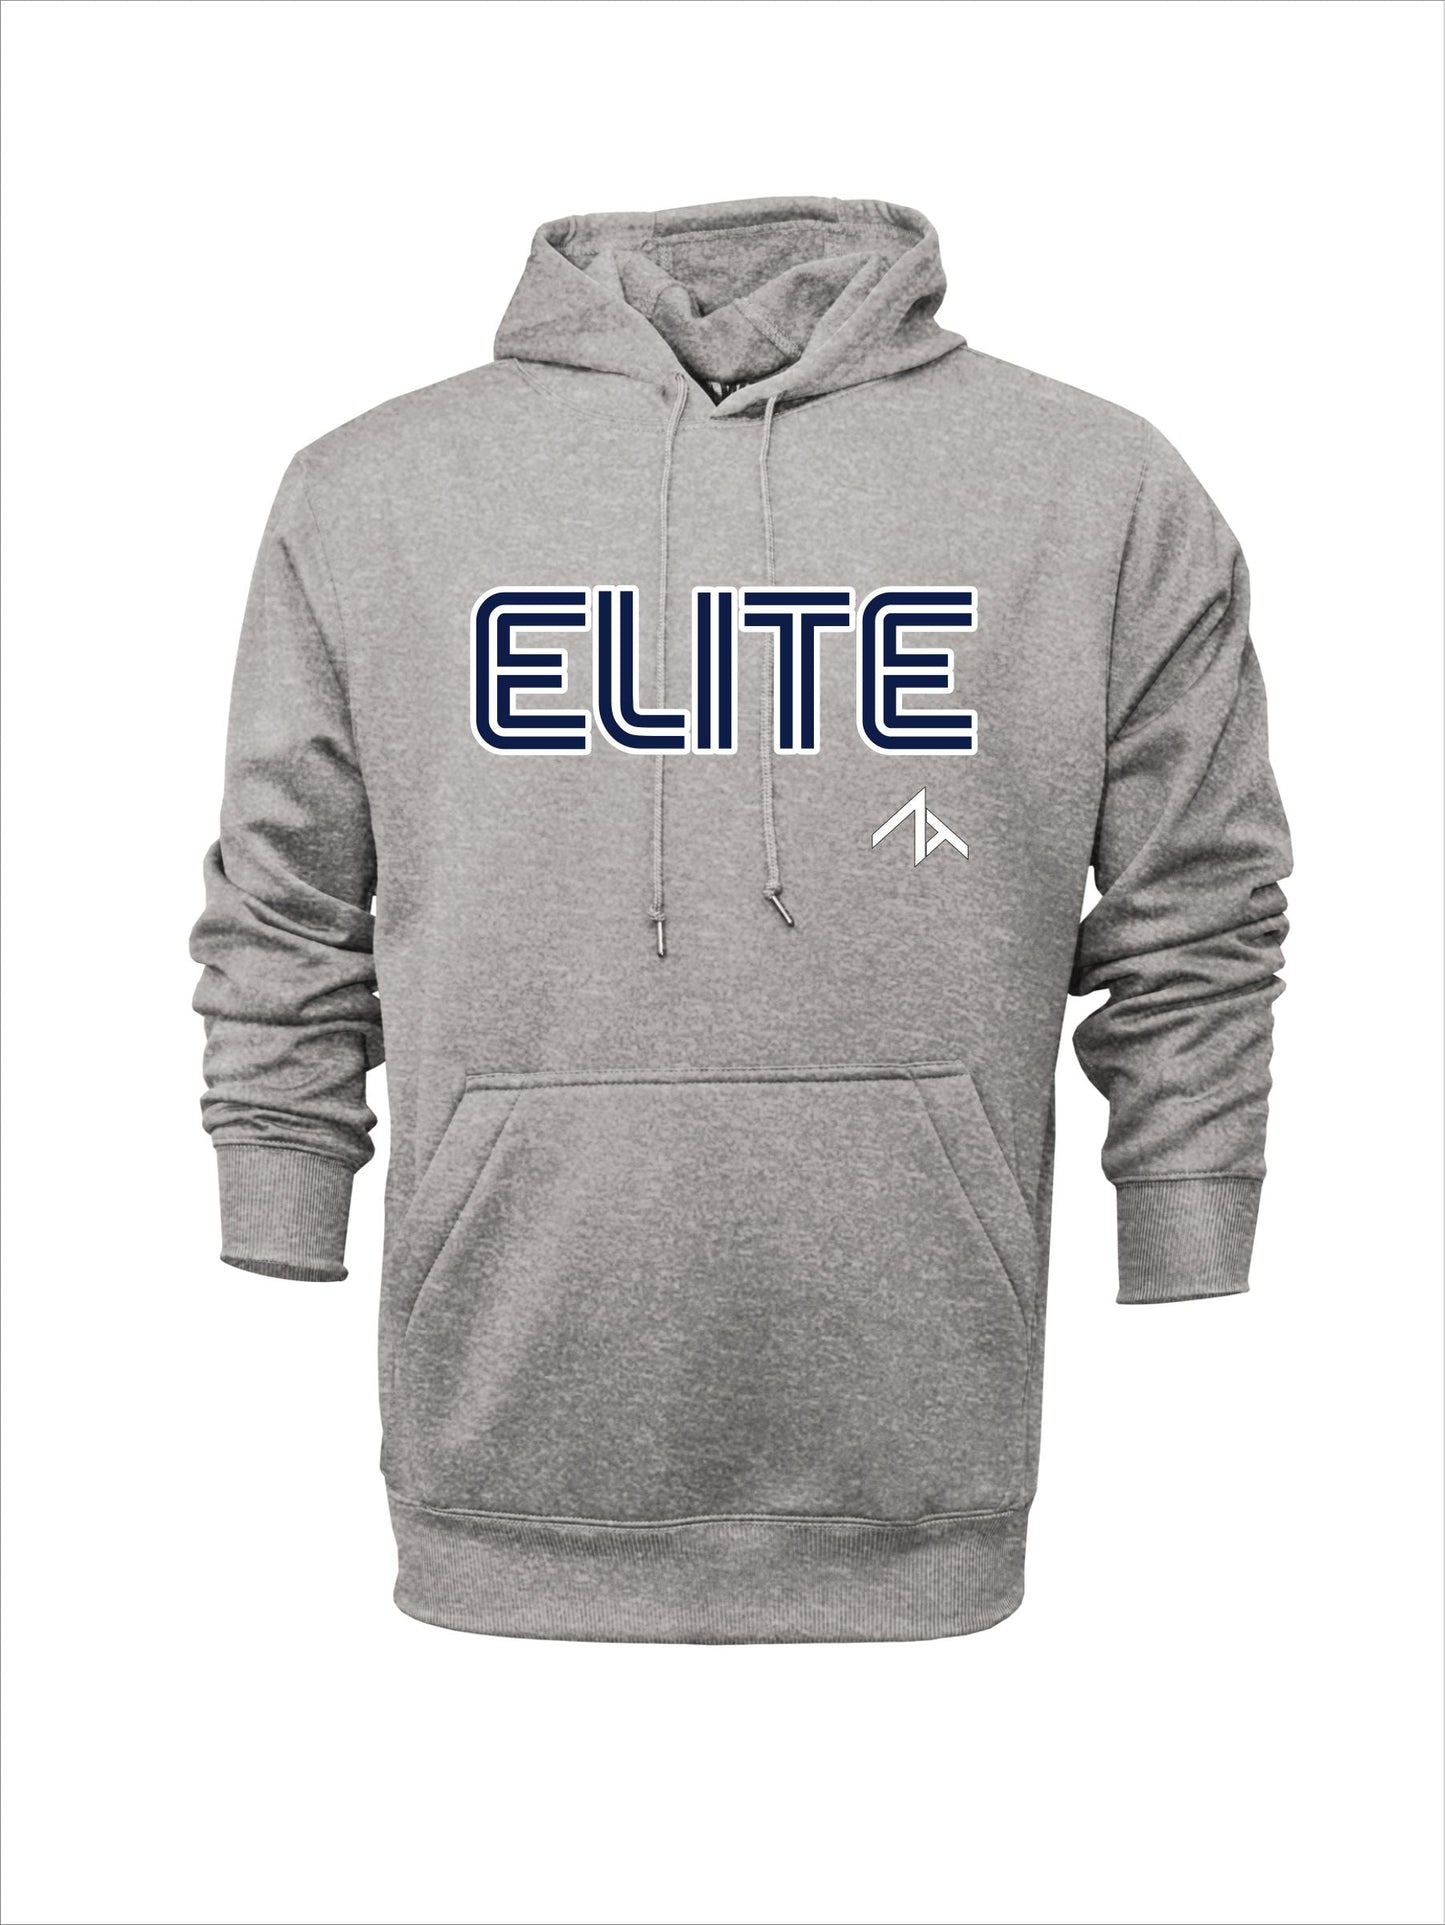 Long-sleeve "Elite" Polyester Hoodie - Navy or Grey Logo